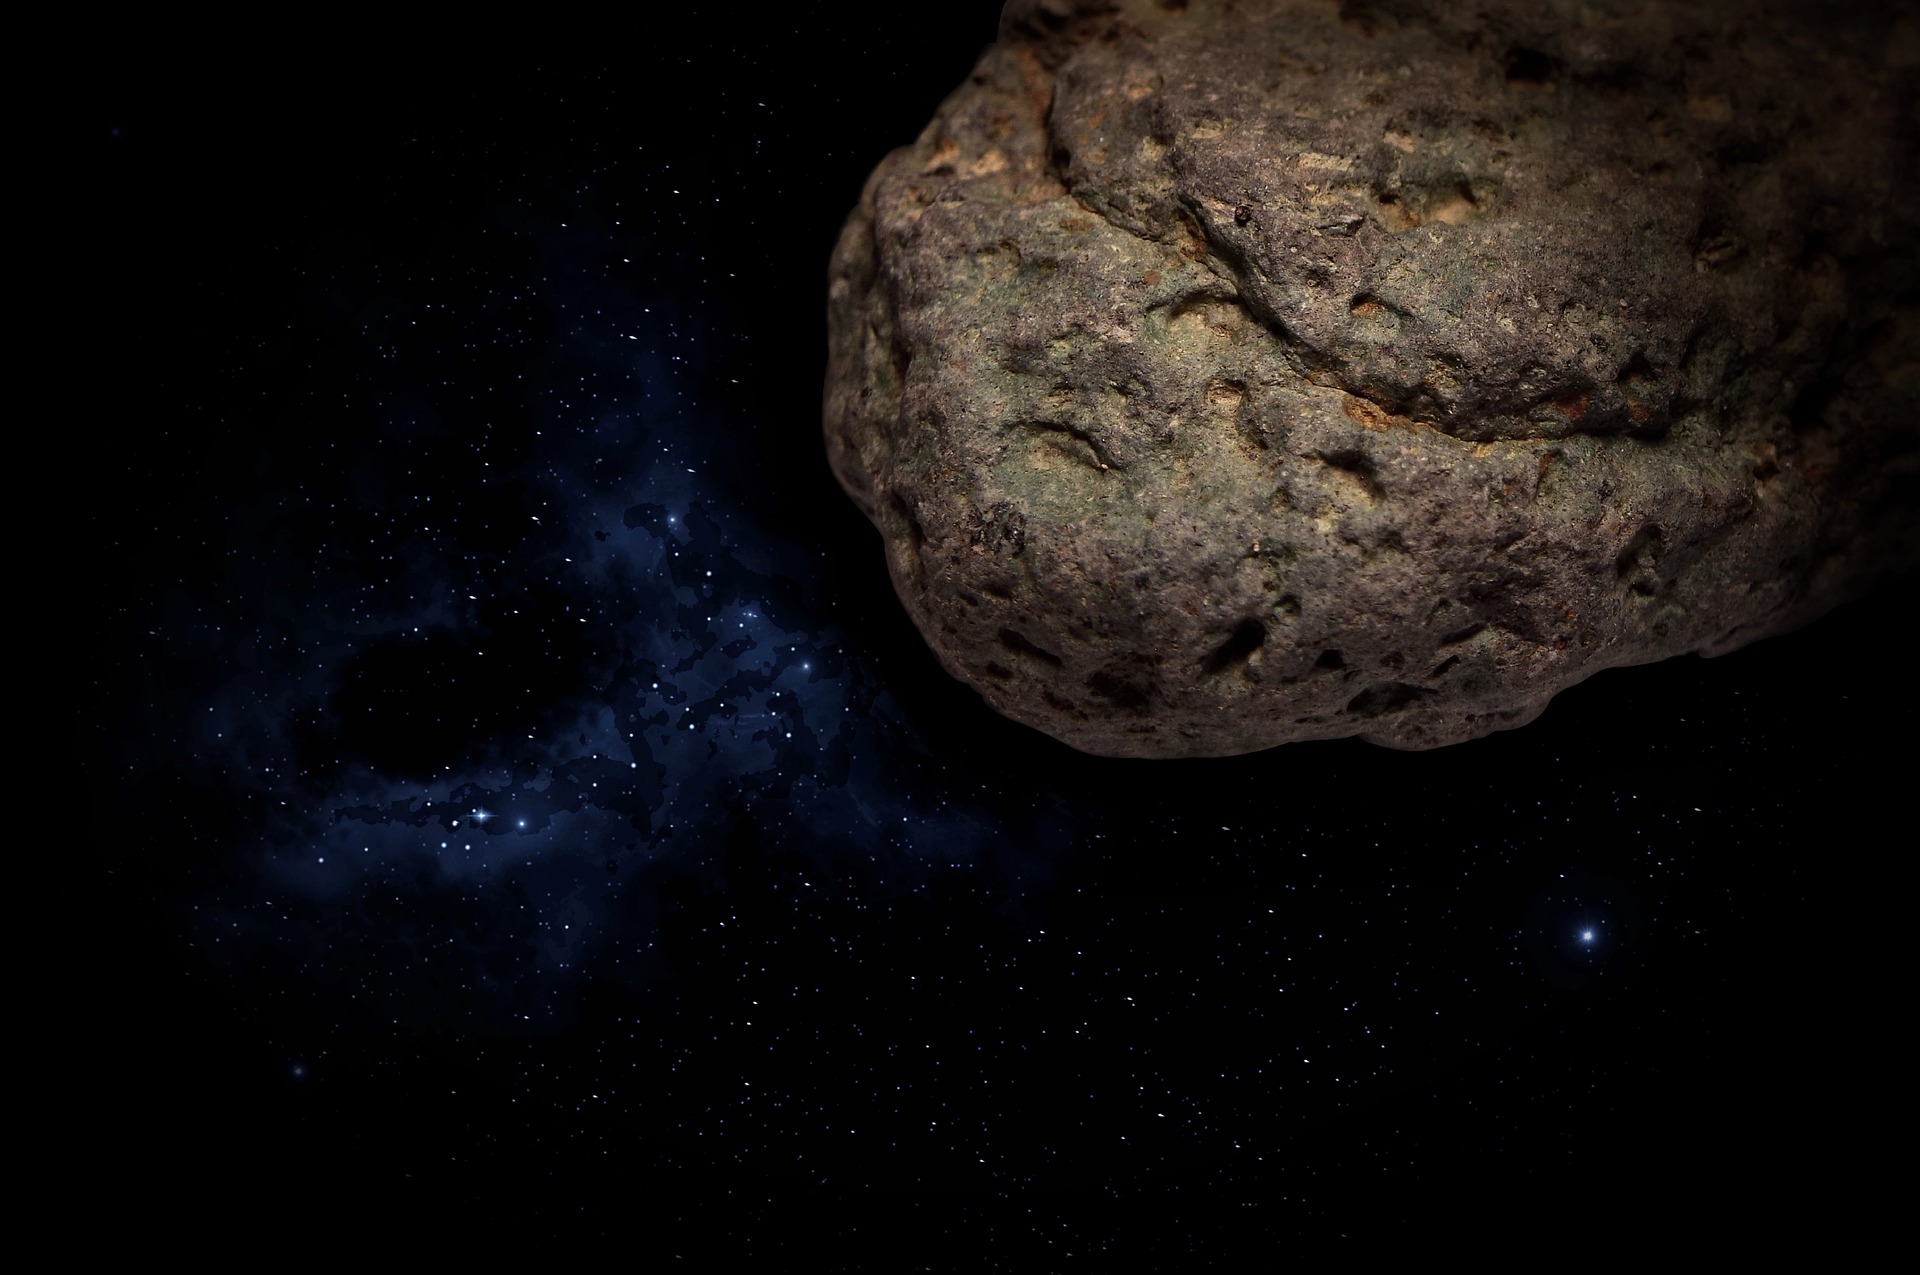 NASA предупредило о приближении к Земле крупного астероида